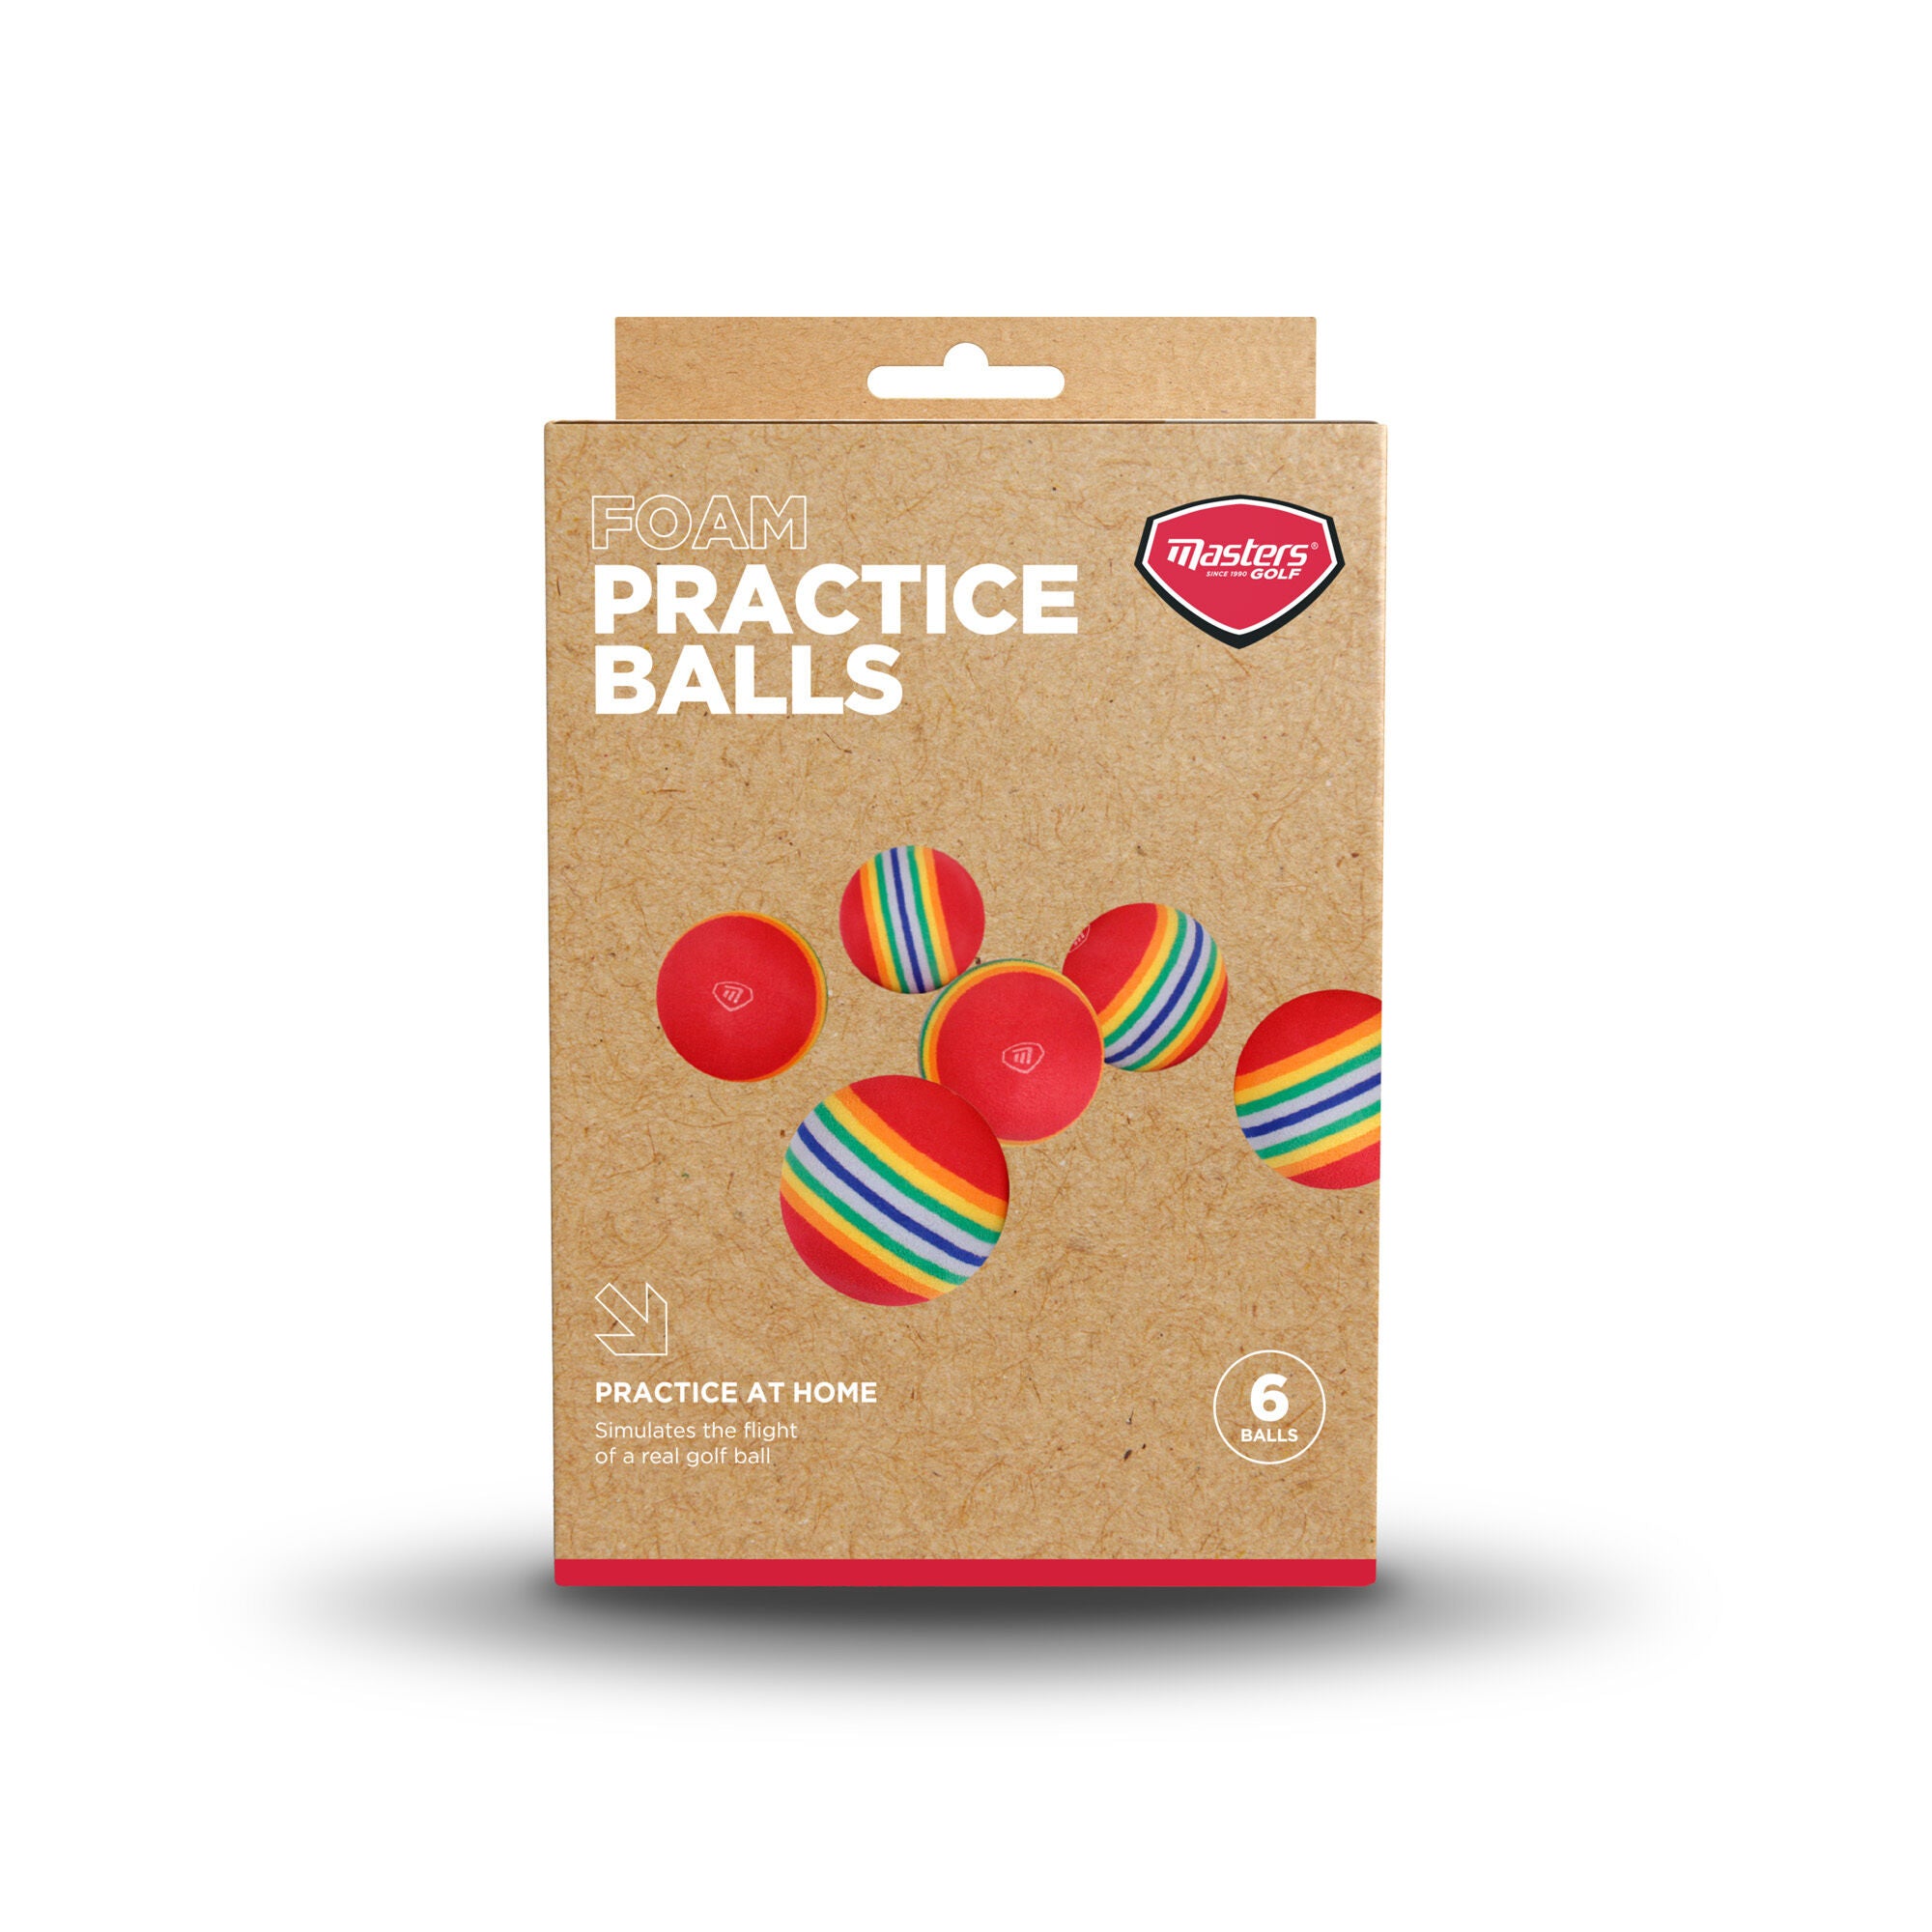 Foam Practice Balls pack of 6